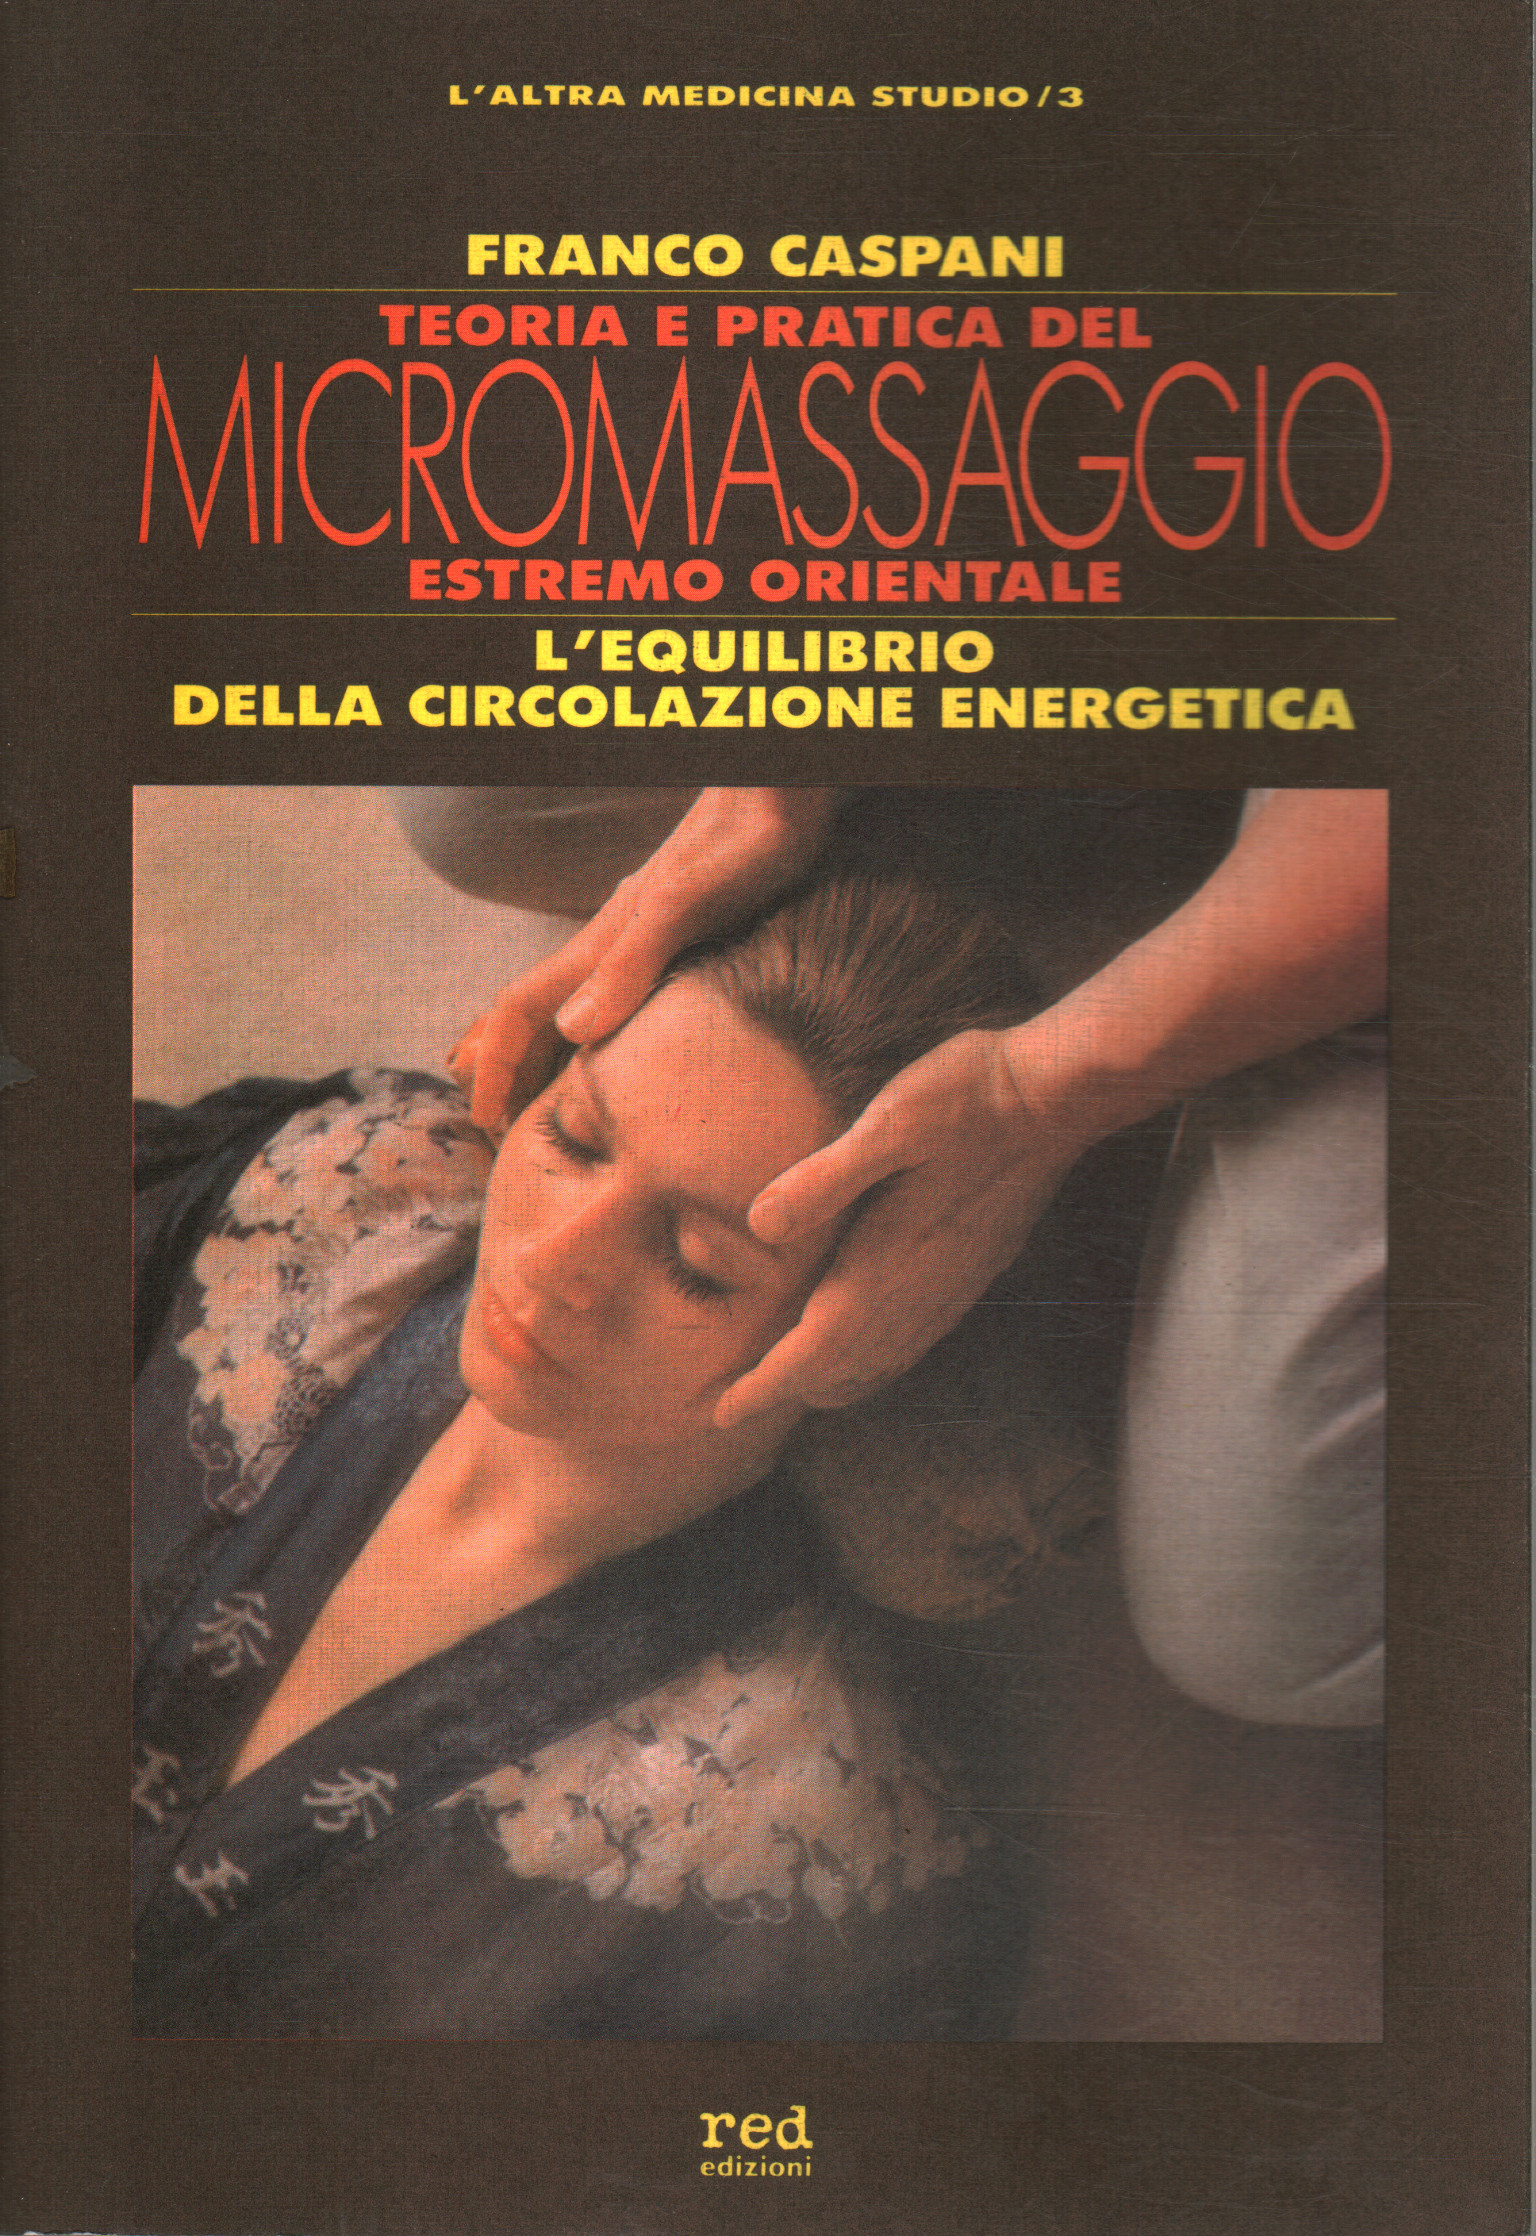 Teoria e pratica del micro massaggio estremo orien, Franco Caspani